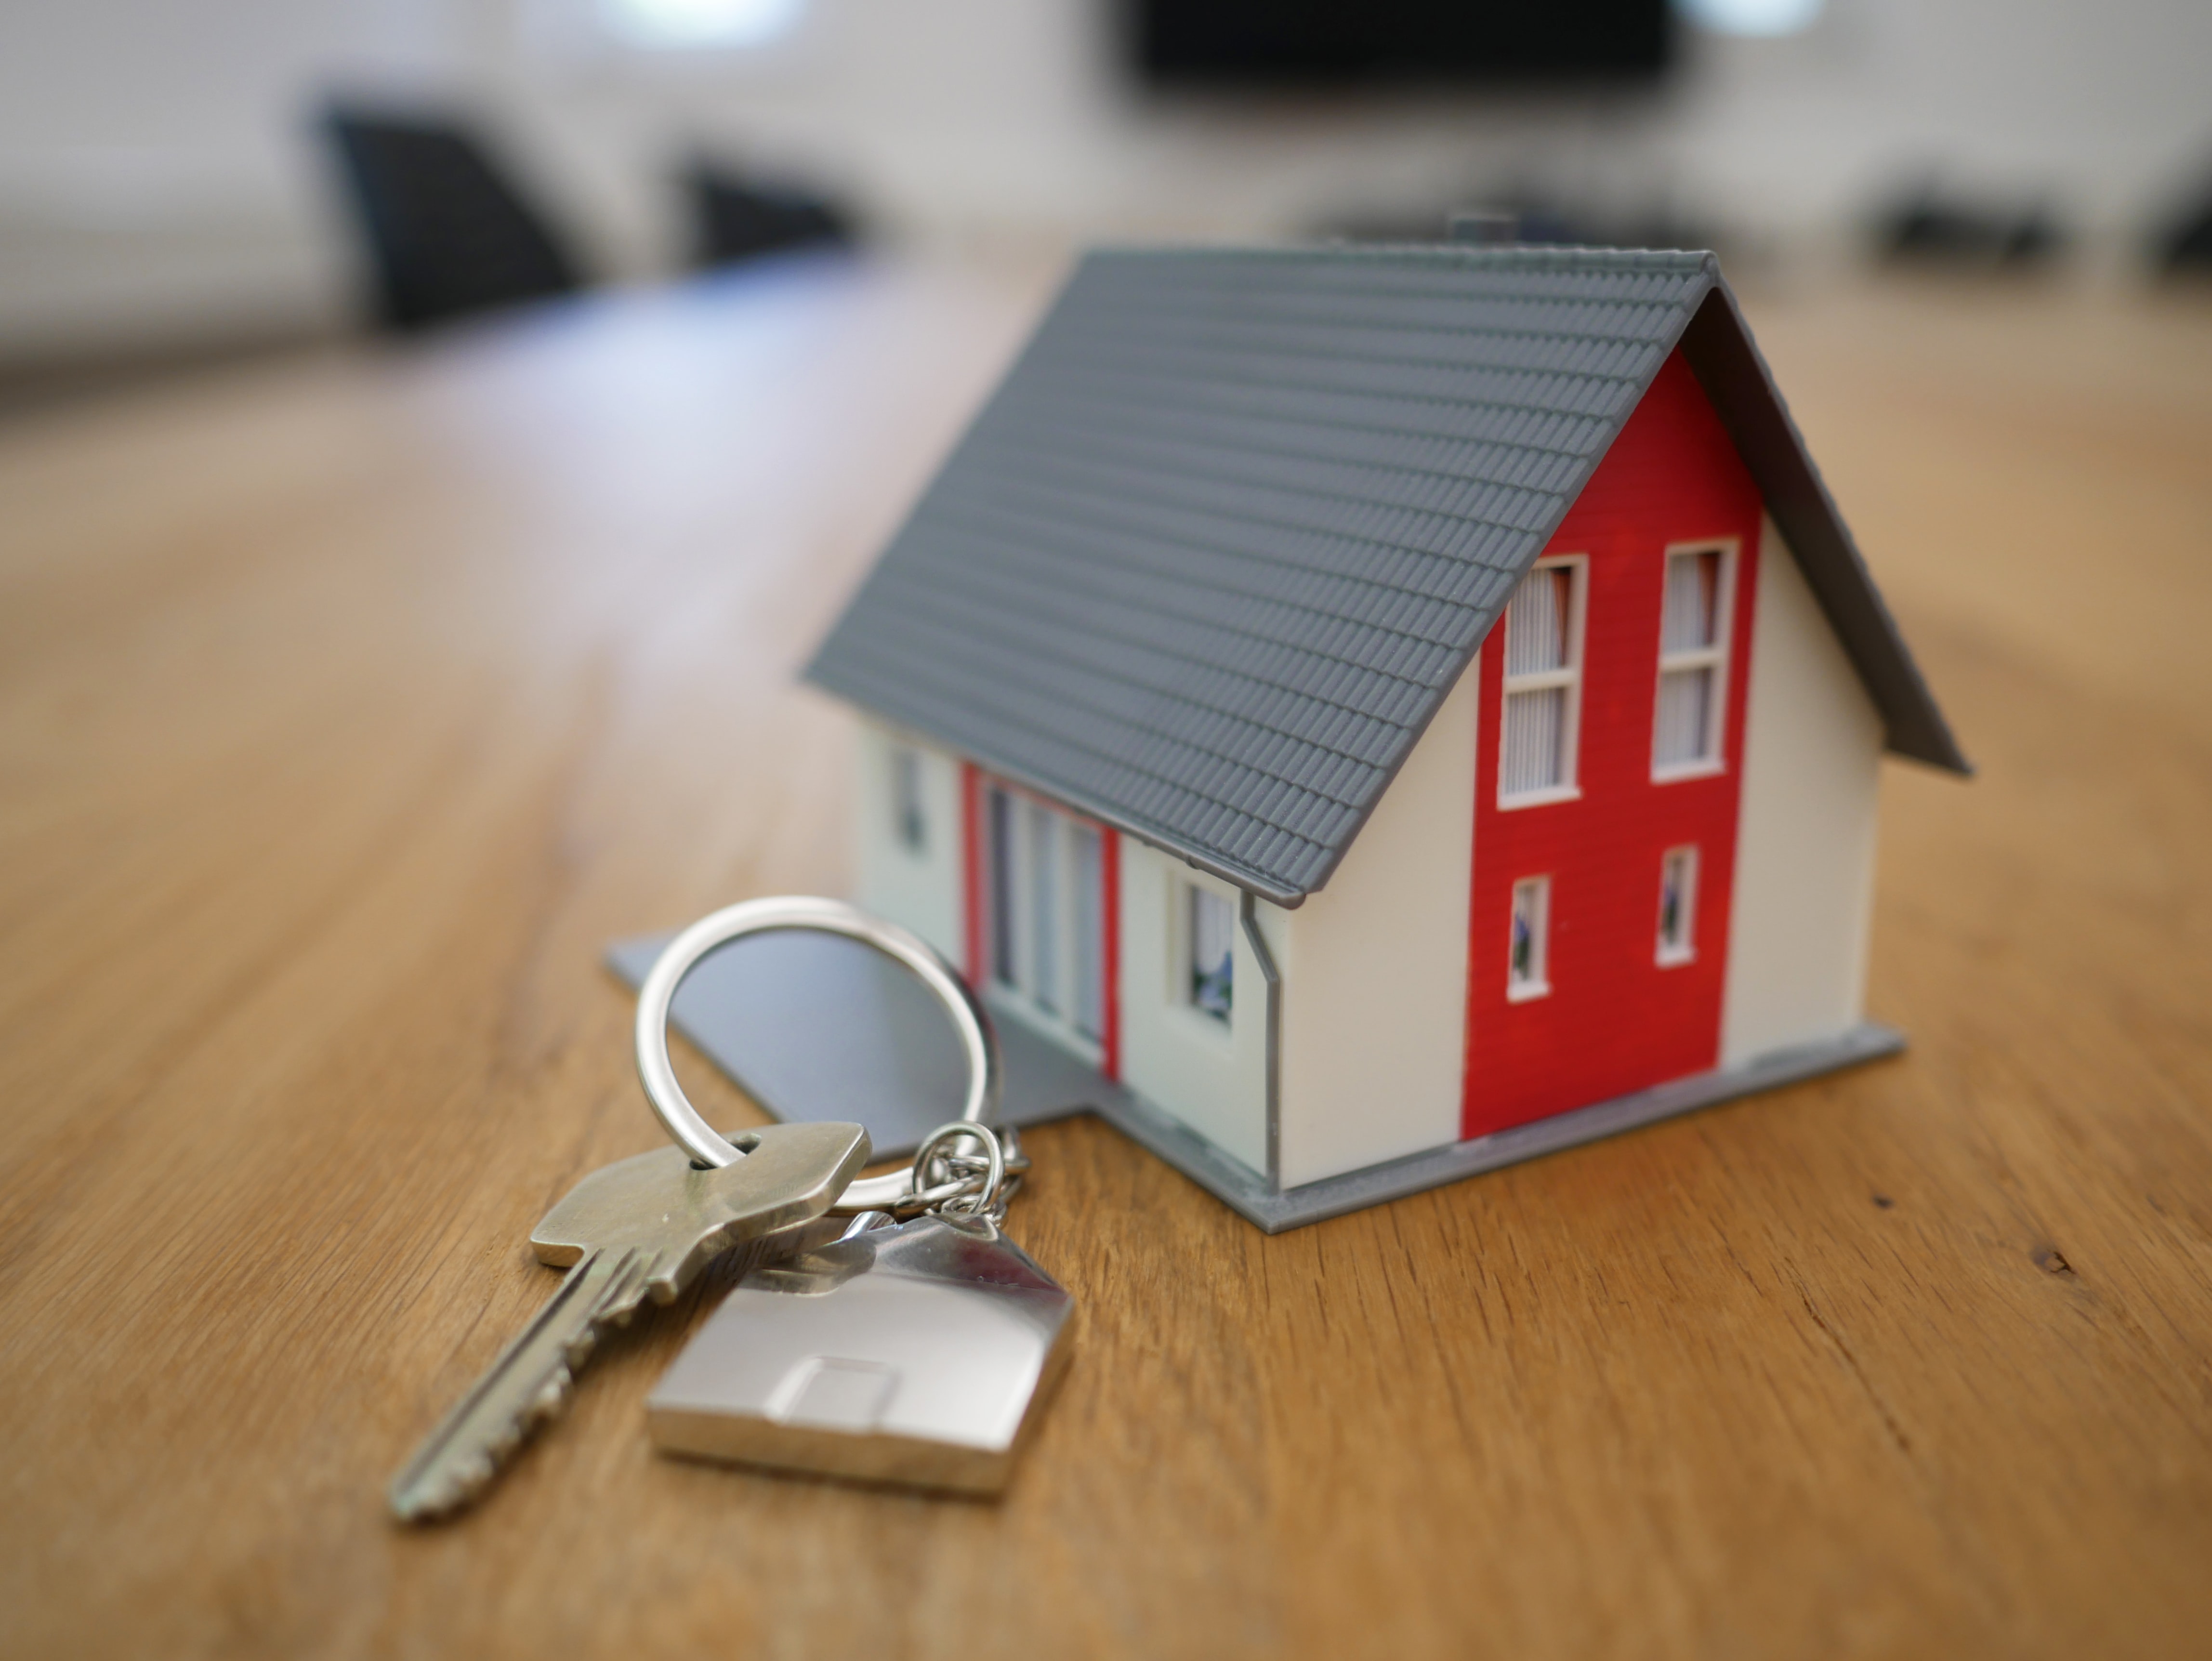 Key Next to White & Red House Miniature